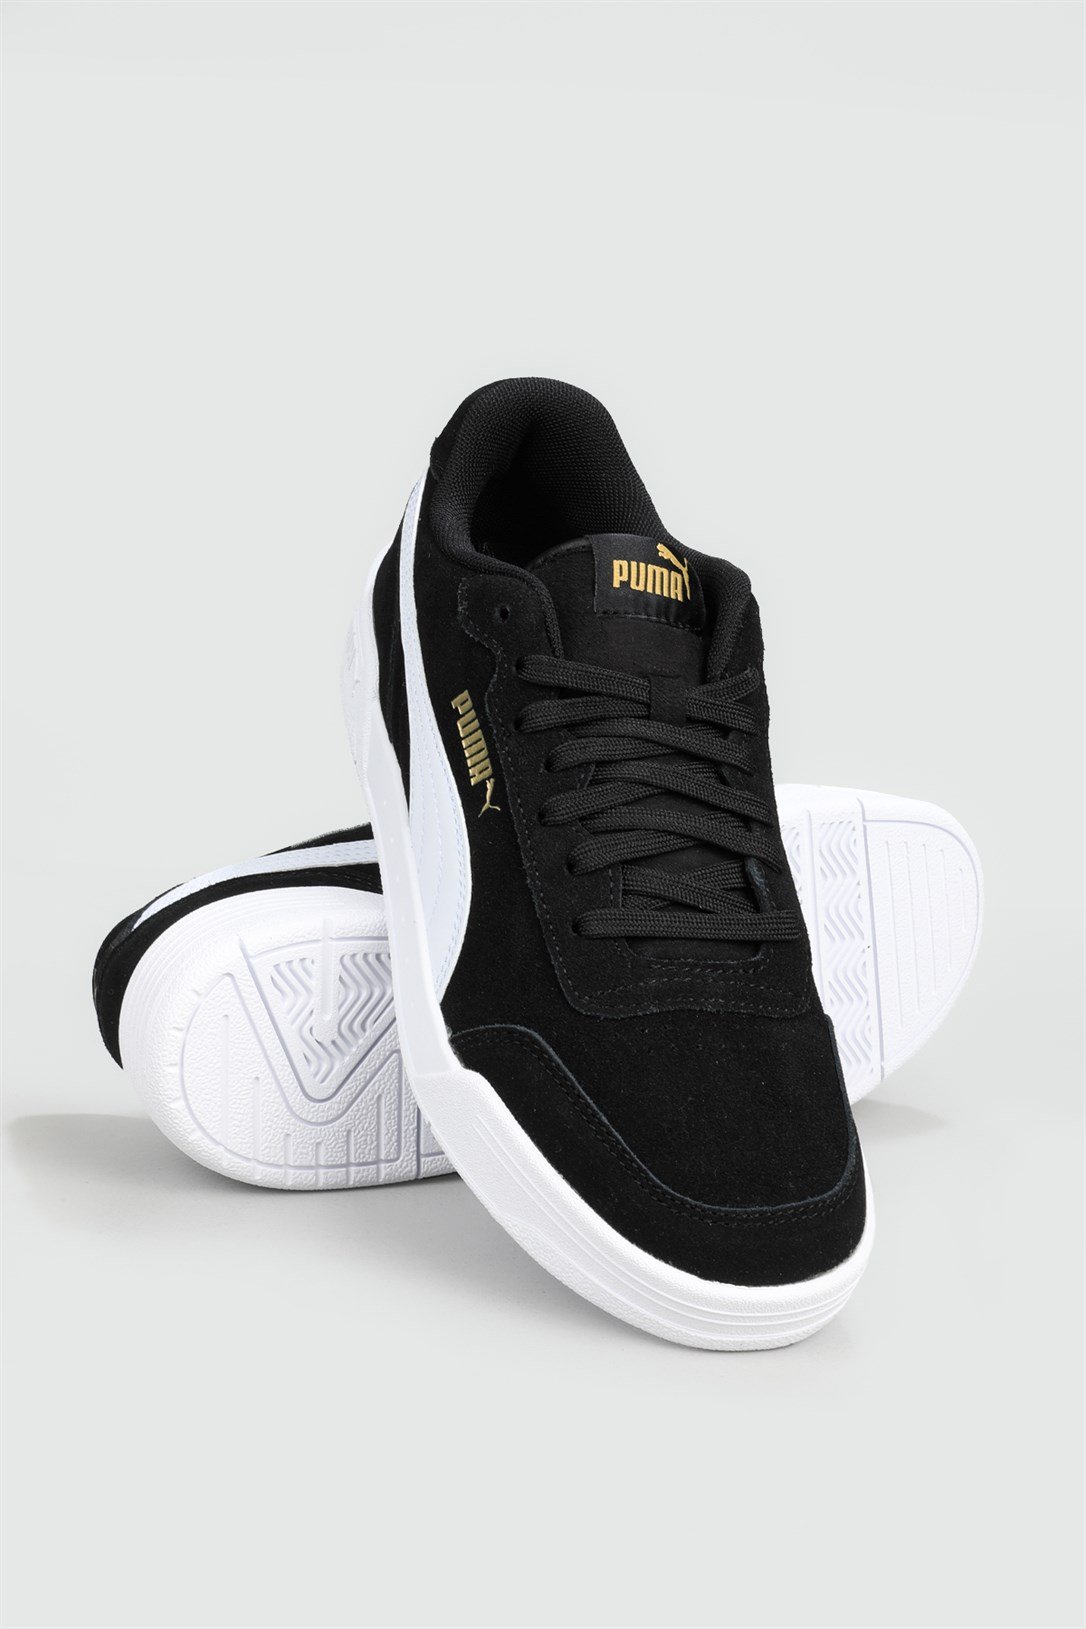 Puma Günlük Rahat Koşu Yürüyüş Siyah Beyaz Erkek Spor Ayakkabı 370304-01 |  Ayakkabı City